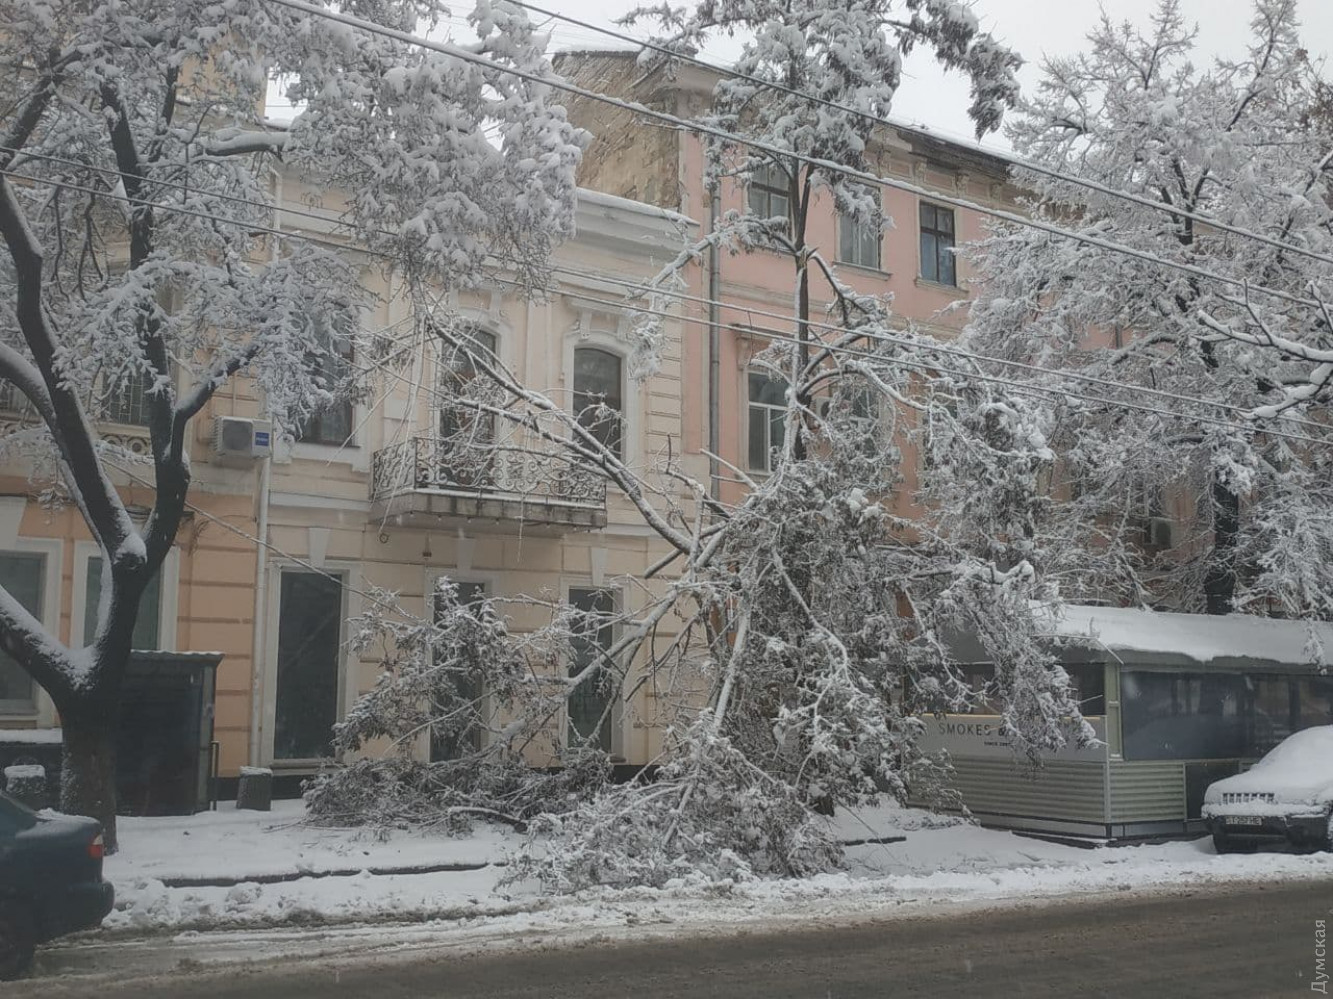 Круглосуточные снегопады в Одессе: как город справляется с непогодой (ФОТО, ВИДЕО) - фото 2